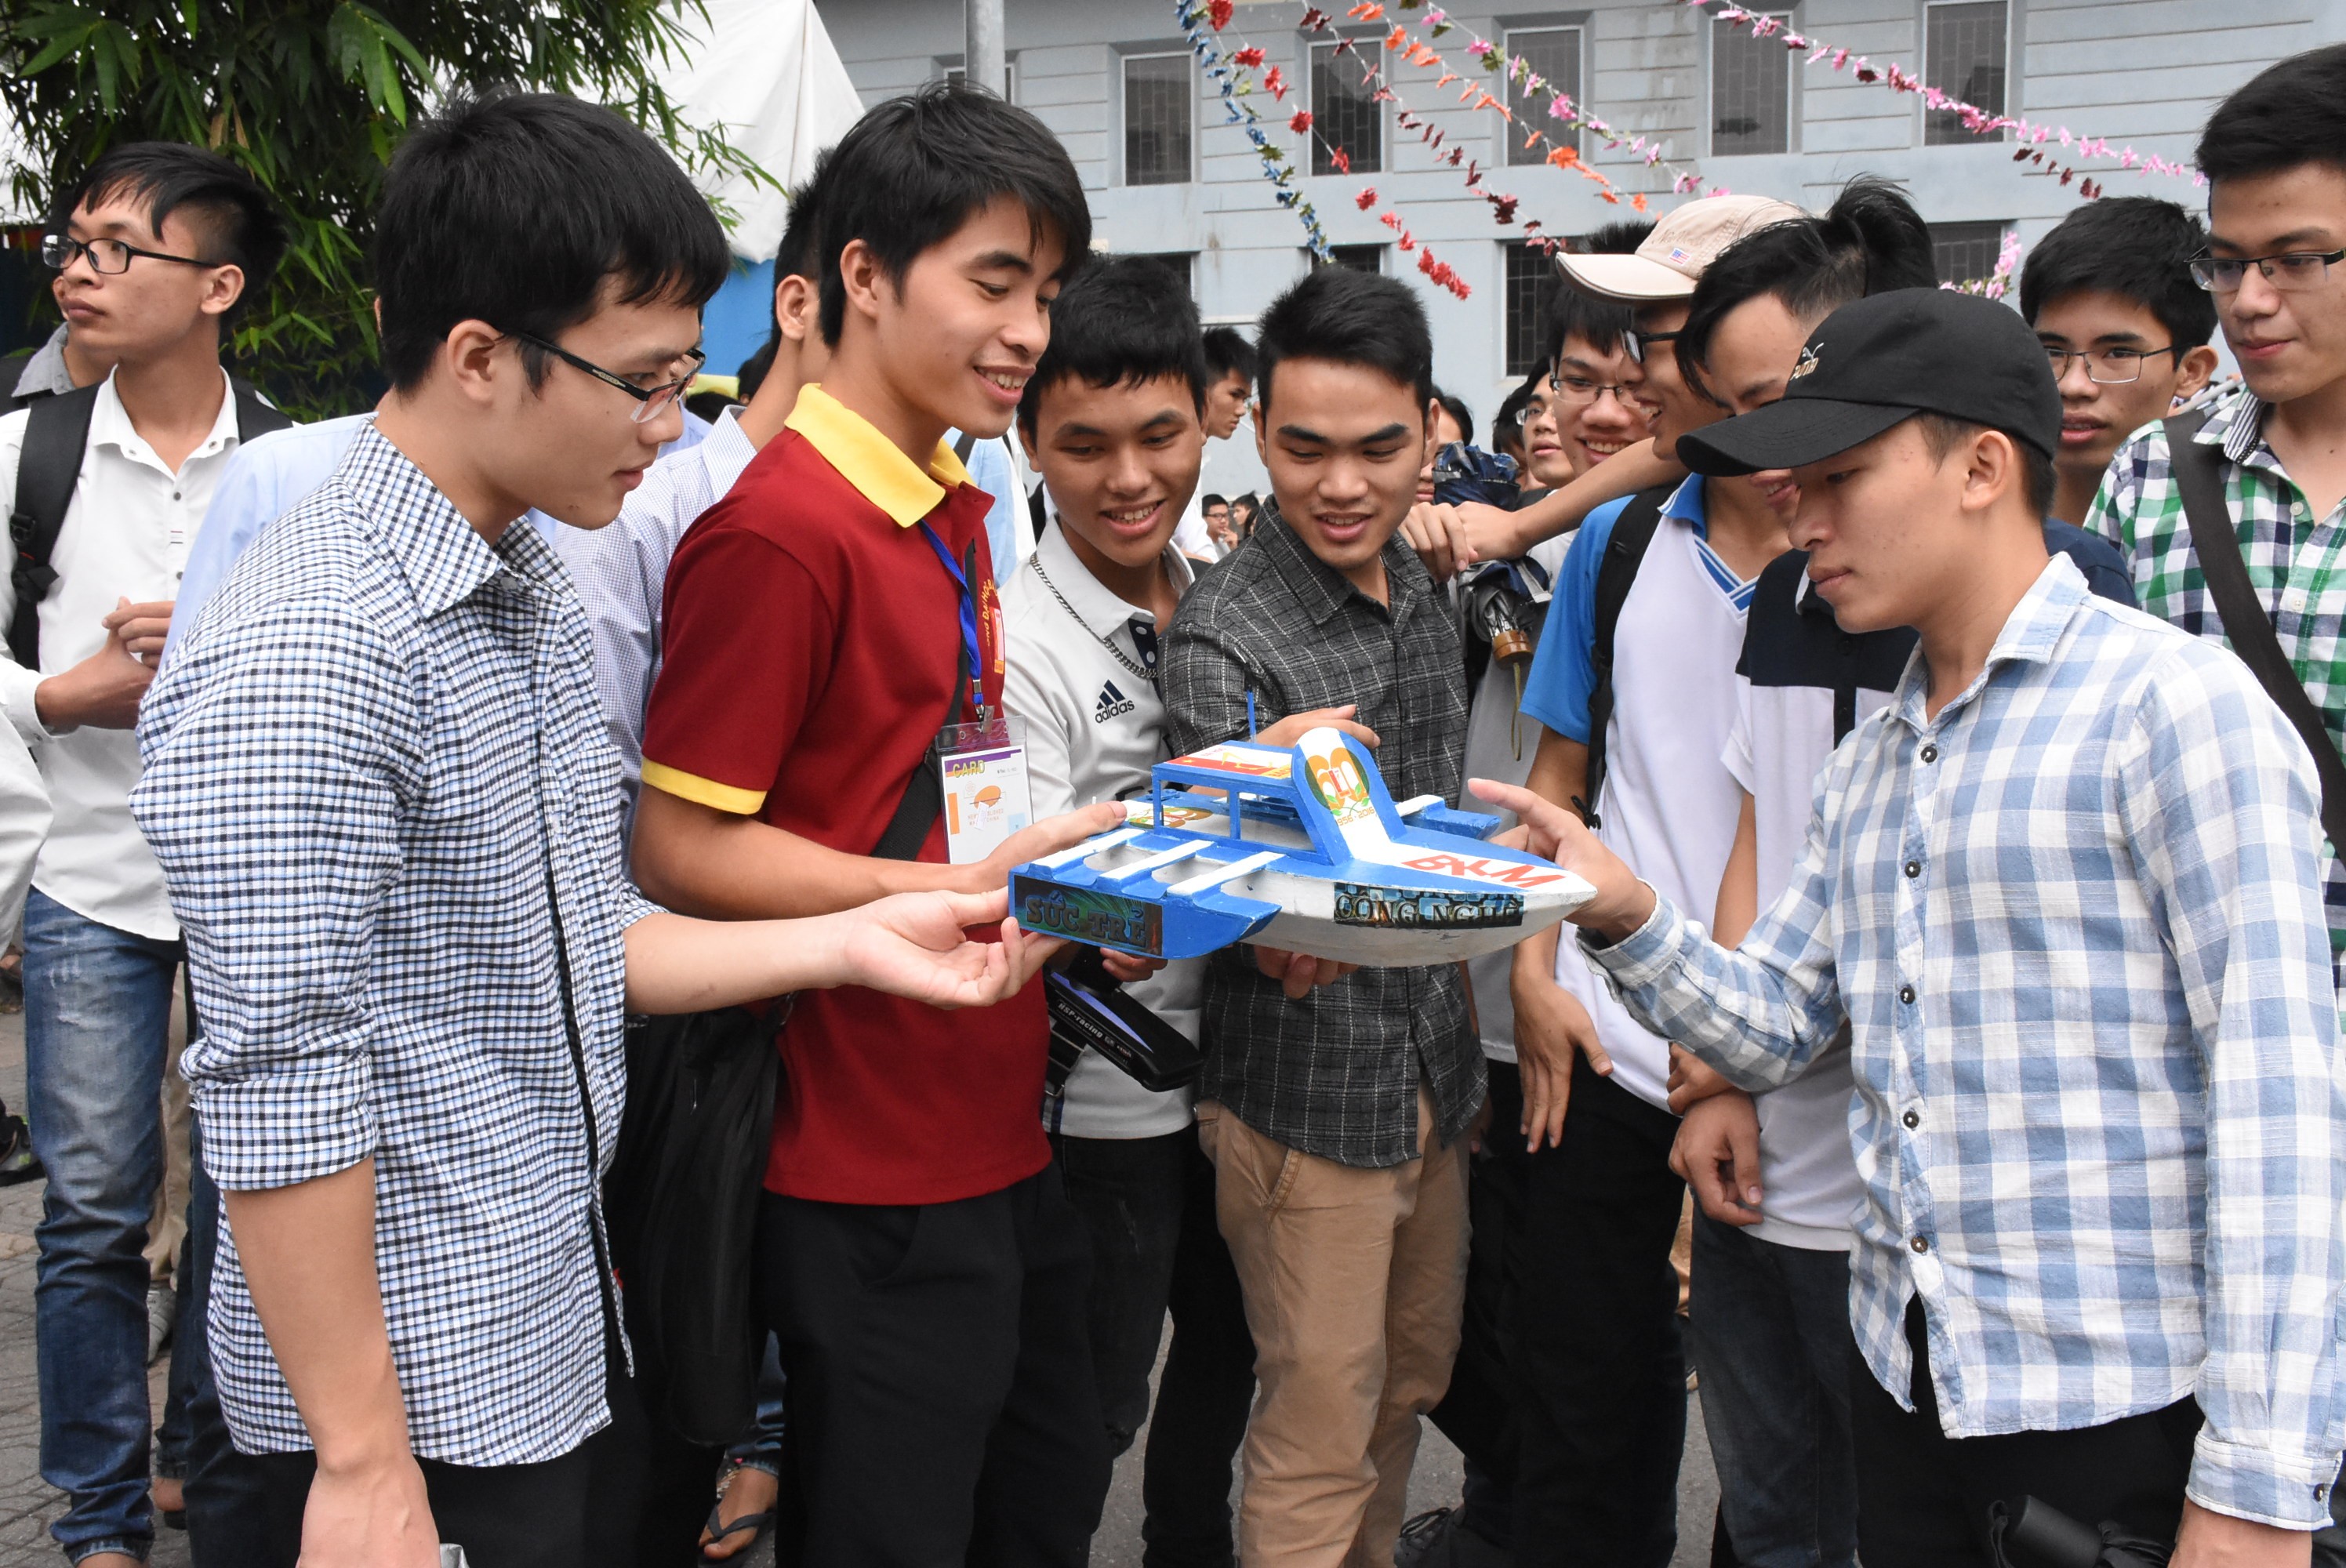 Việt Nam hiện có 171 trường công lập trong tổng số 235 trường đại học. Trong ảnh: Sinh viên ĐH Bách khoa Hà Nội trong cuộc thi “Thiết kế và đua tàu mô hình lần thứ 3 Shipcom 2016” tại trường. Ảnh: nguoiduatin.vn